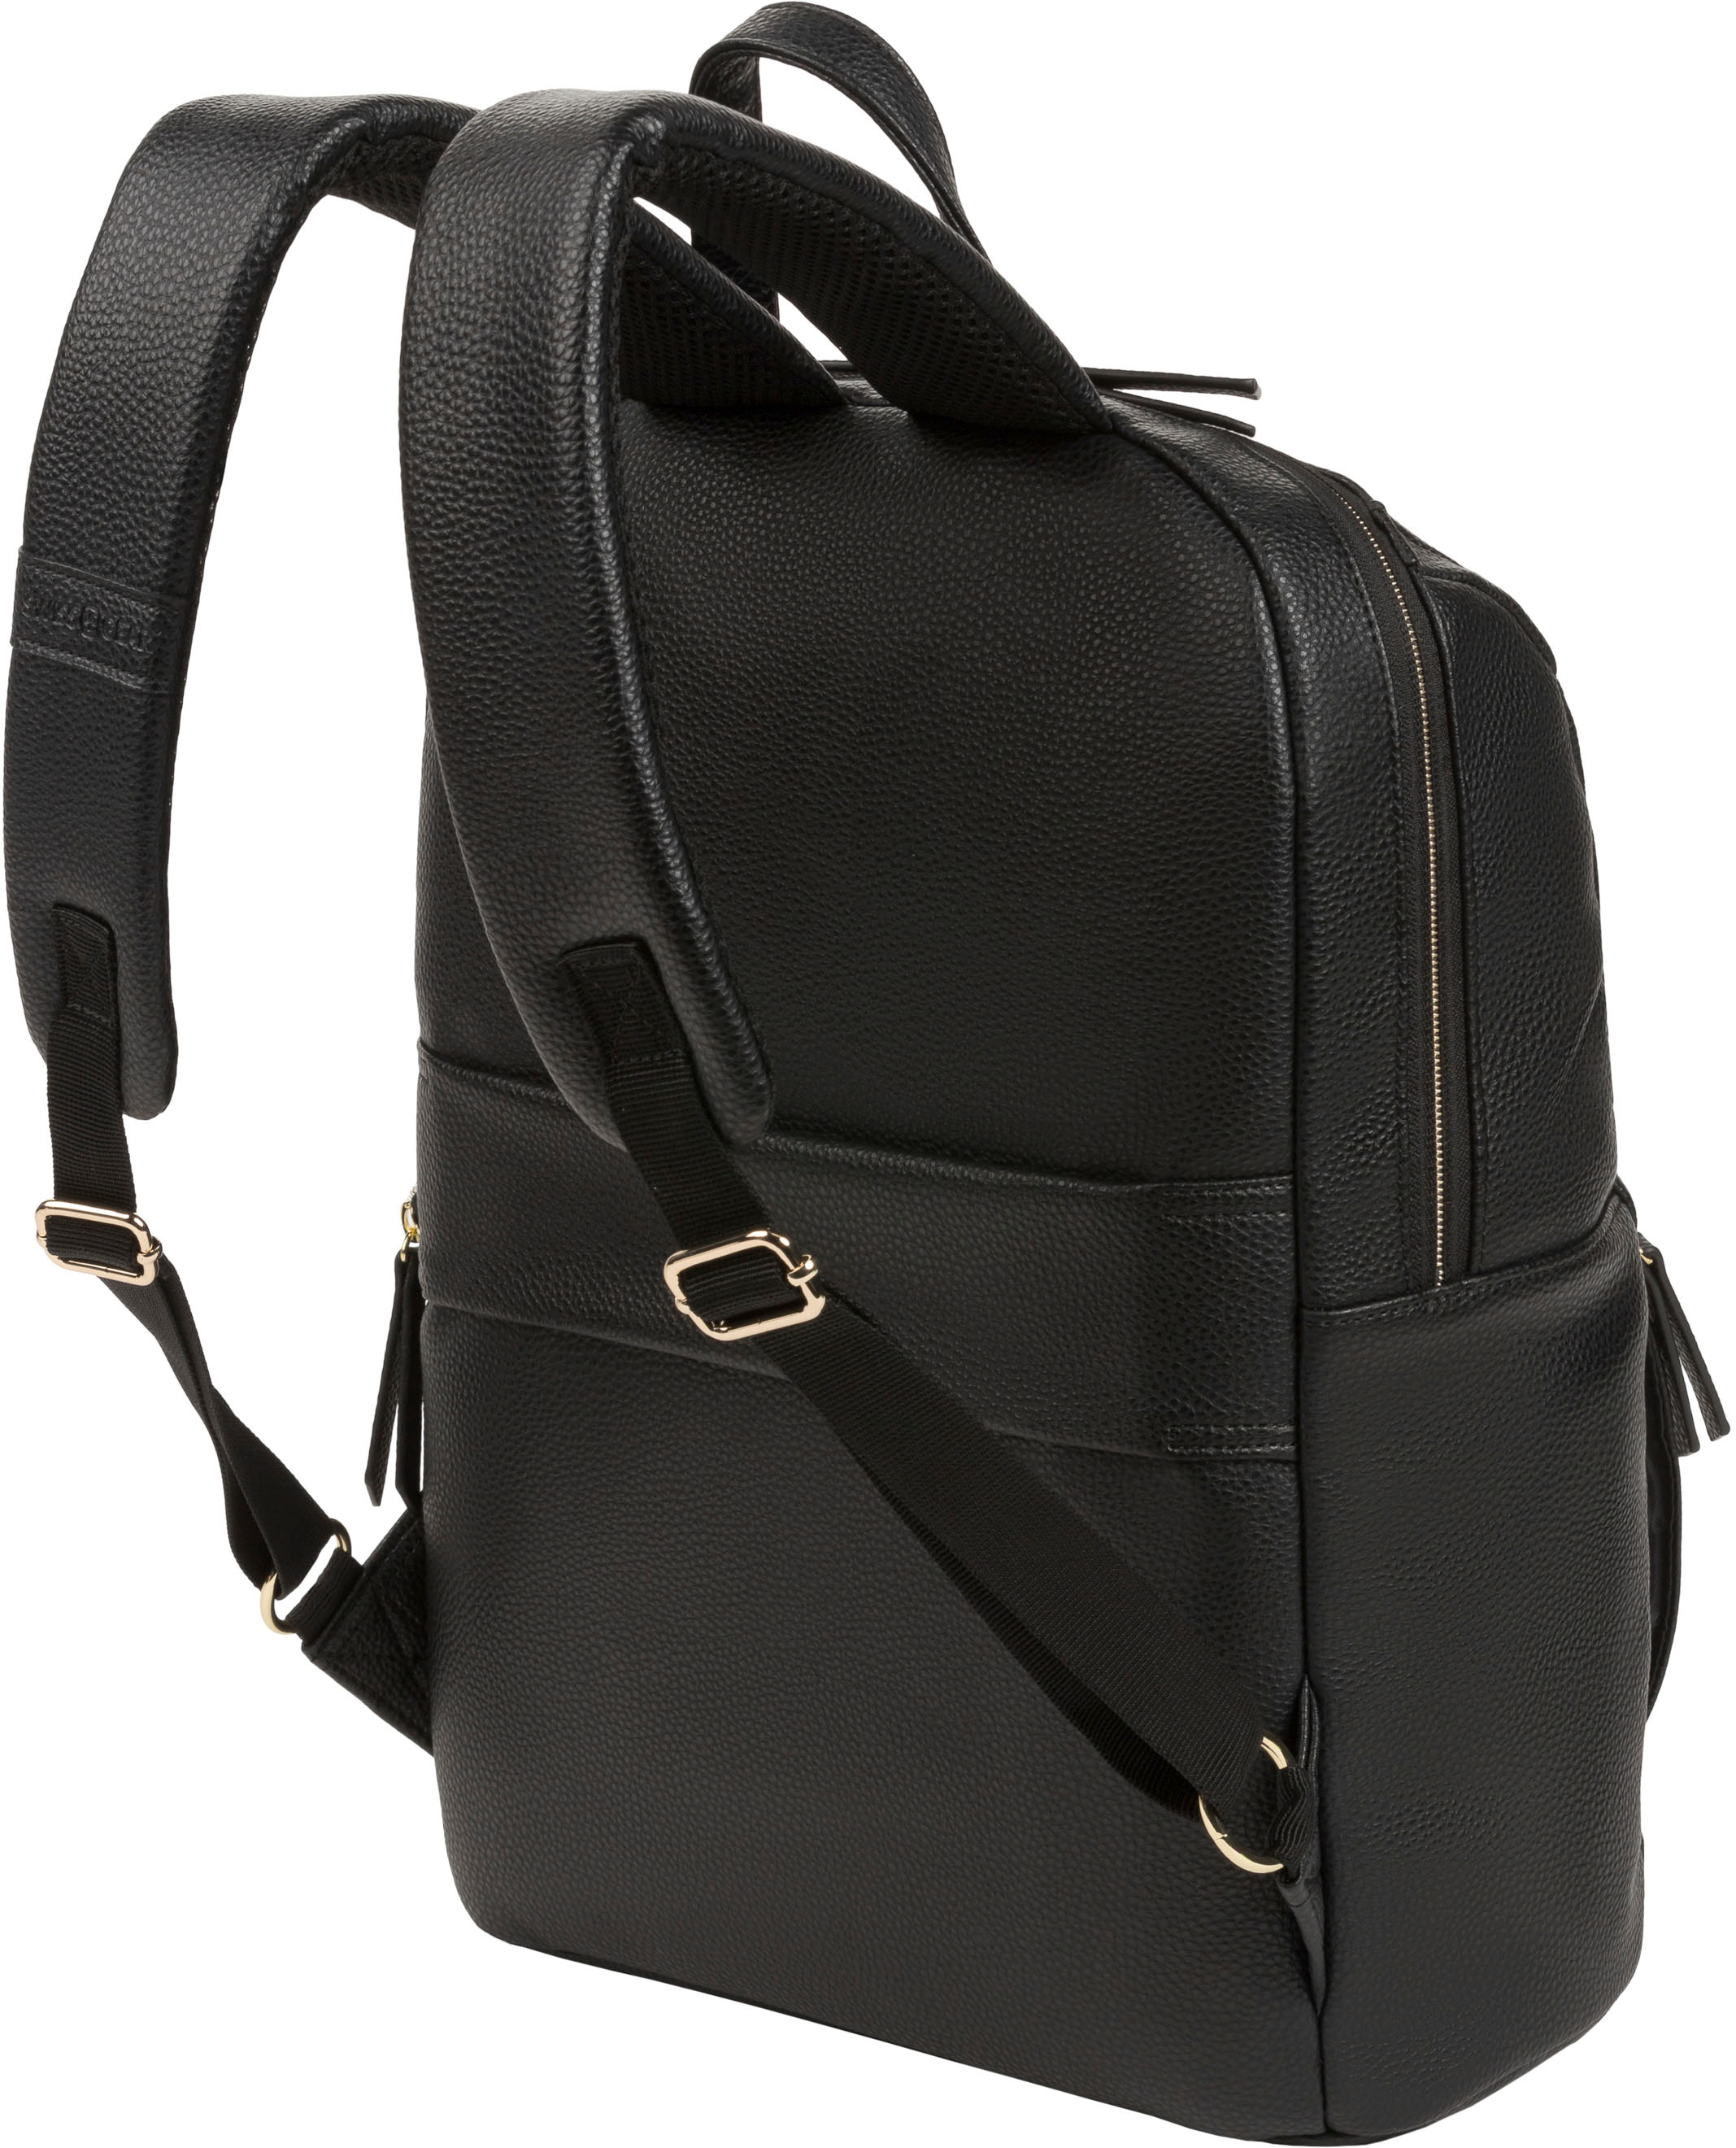 SwissGear 9901 Ladies Laptop Backpack Black 9901202407 - Best Buy